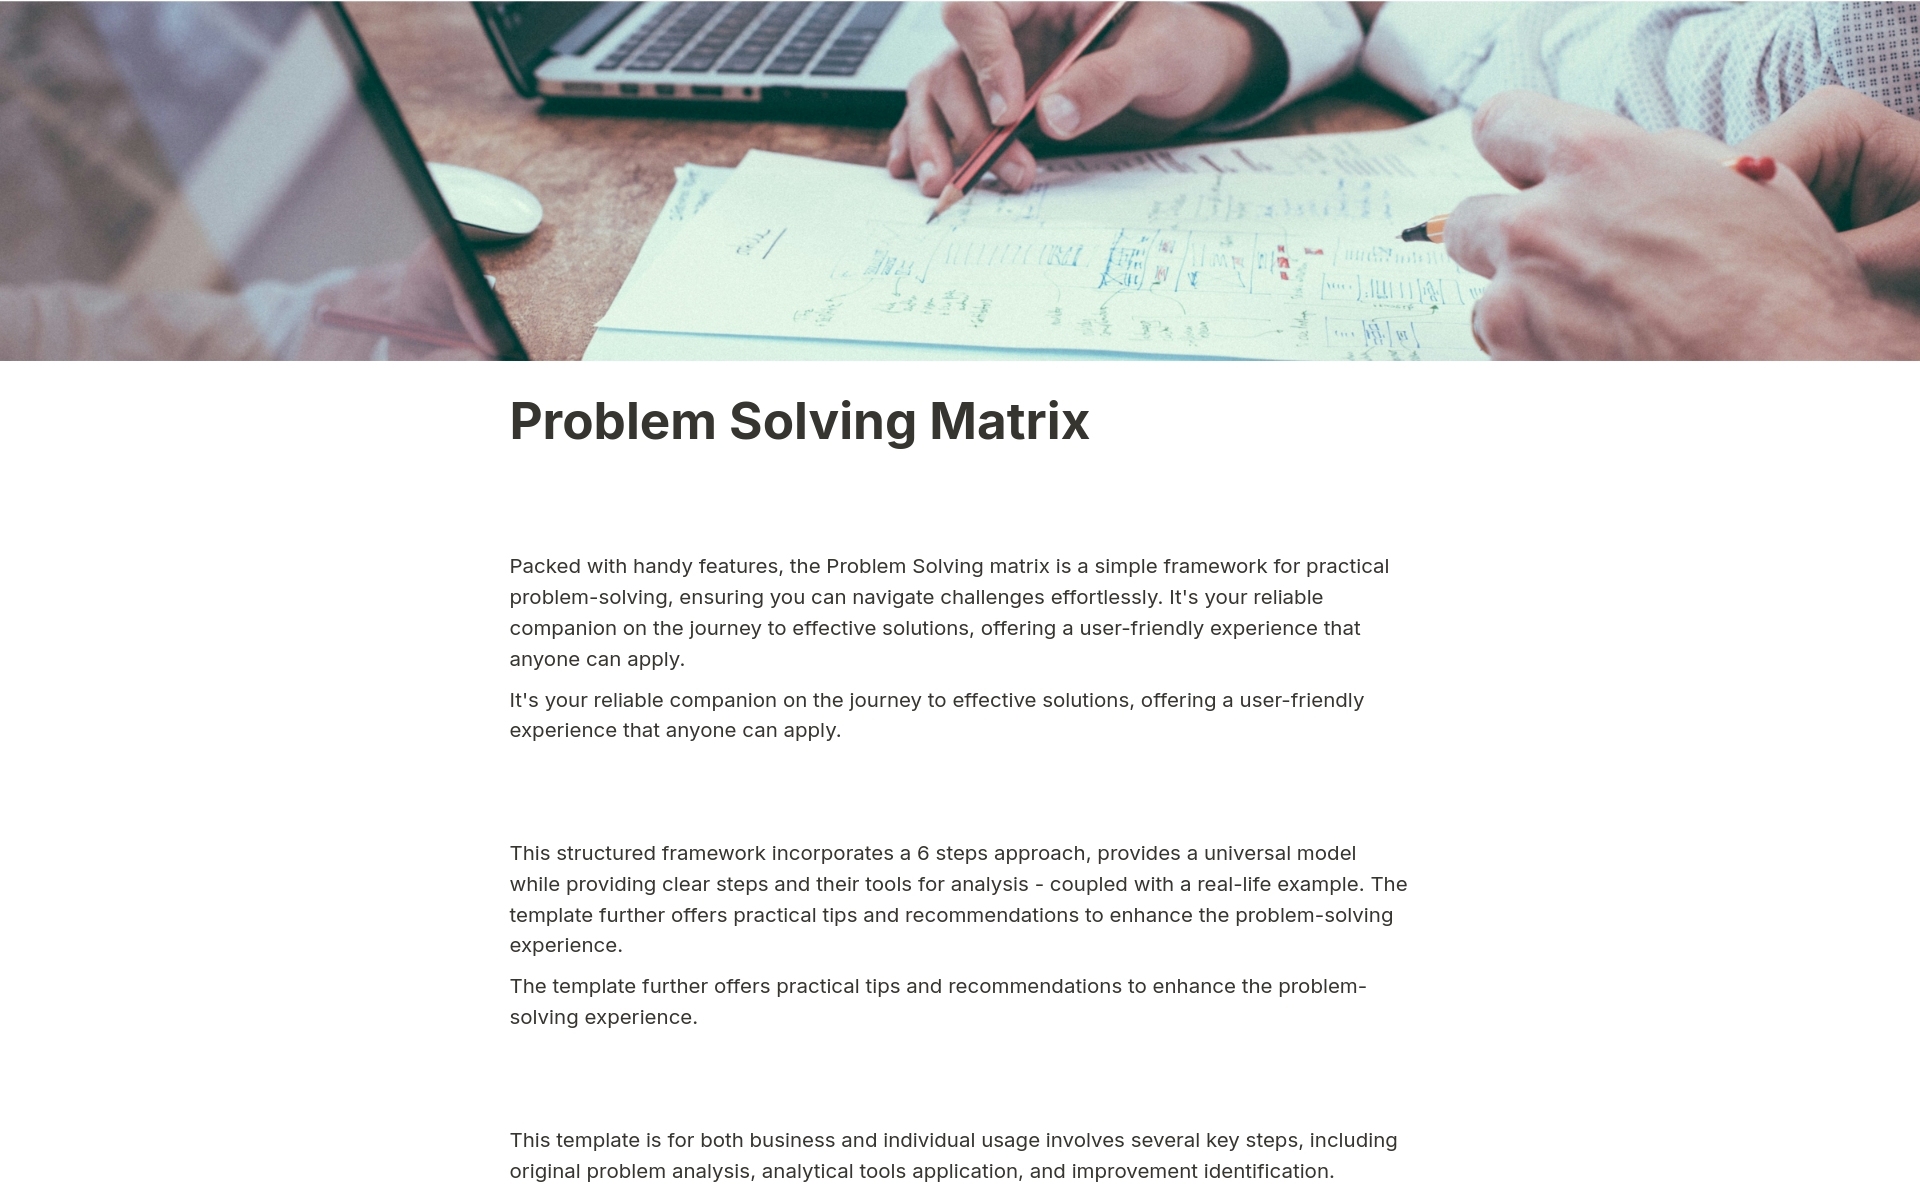 Aperçu du modèle de Problem Solving Matrix